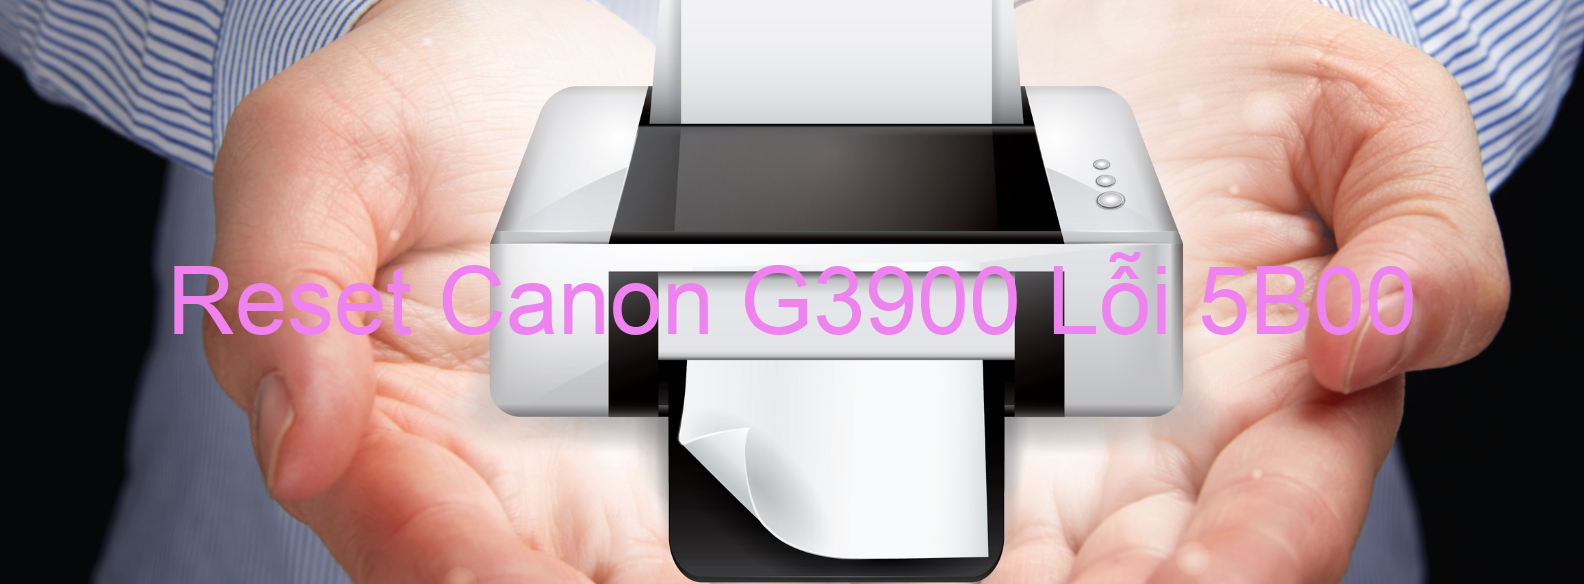 Reset Canon G3900 Lỗi 5B00